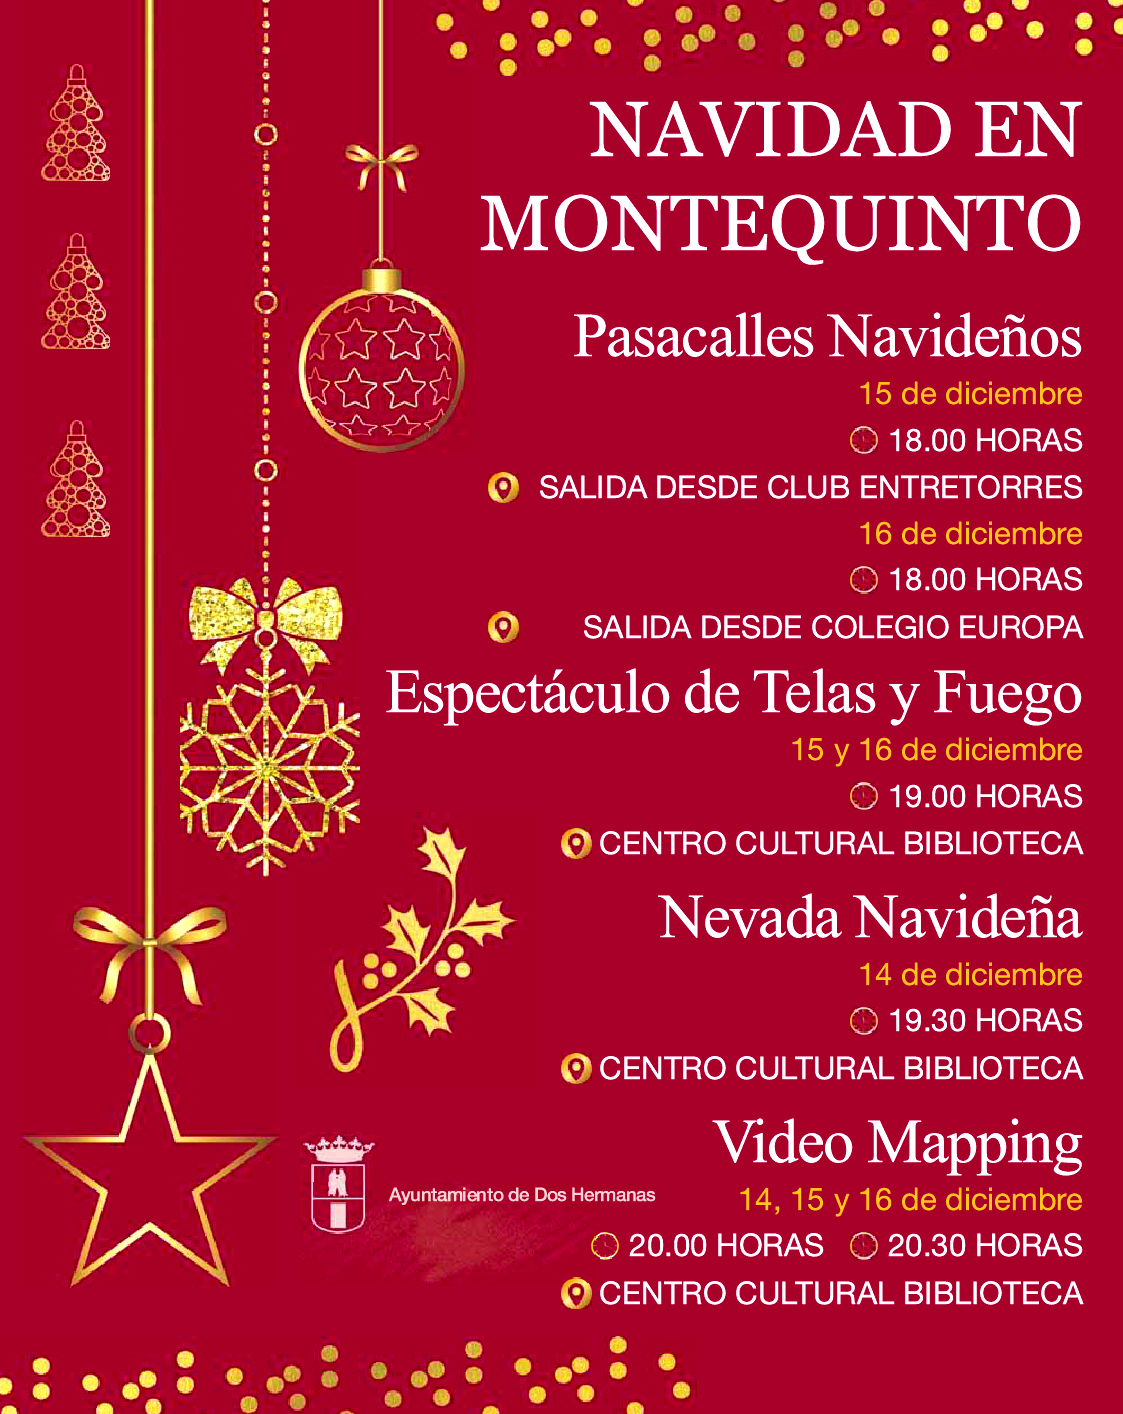 20221214 - Navidad en Montequinto 2022: pasacalles navideños, espectáculo de telas, video mapping y nevadas